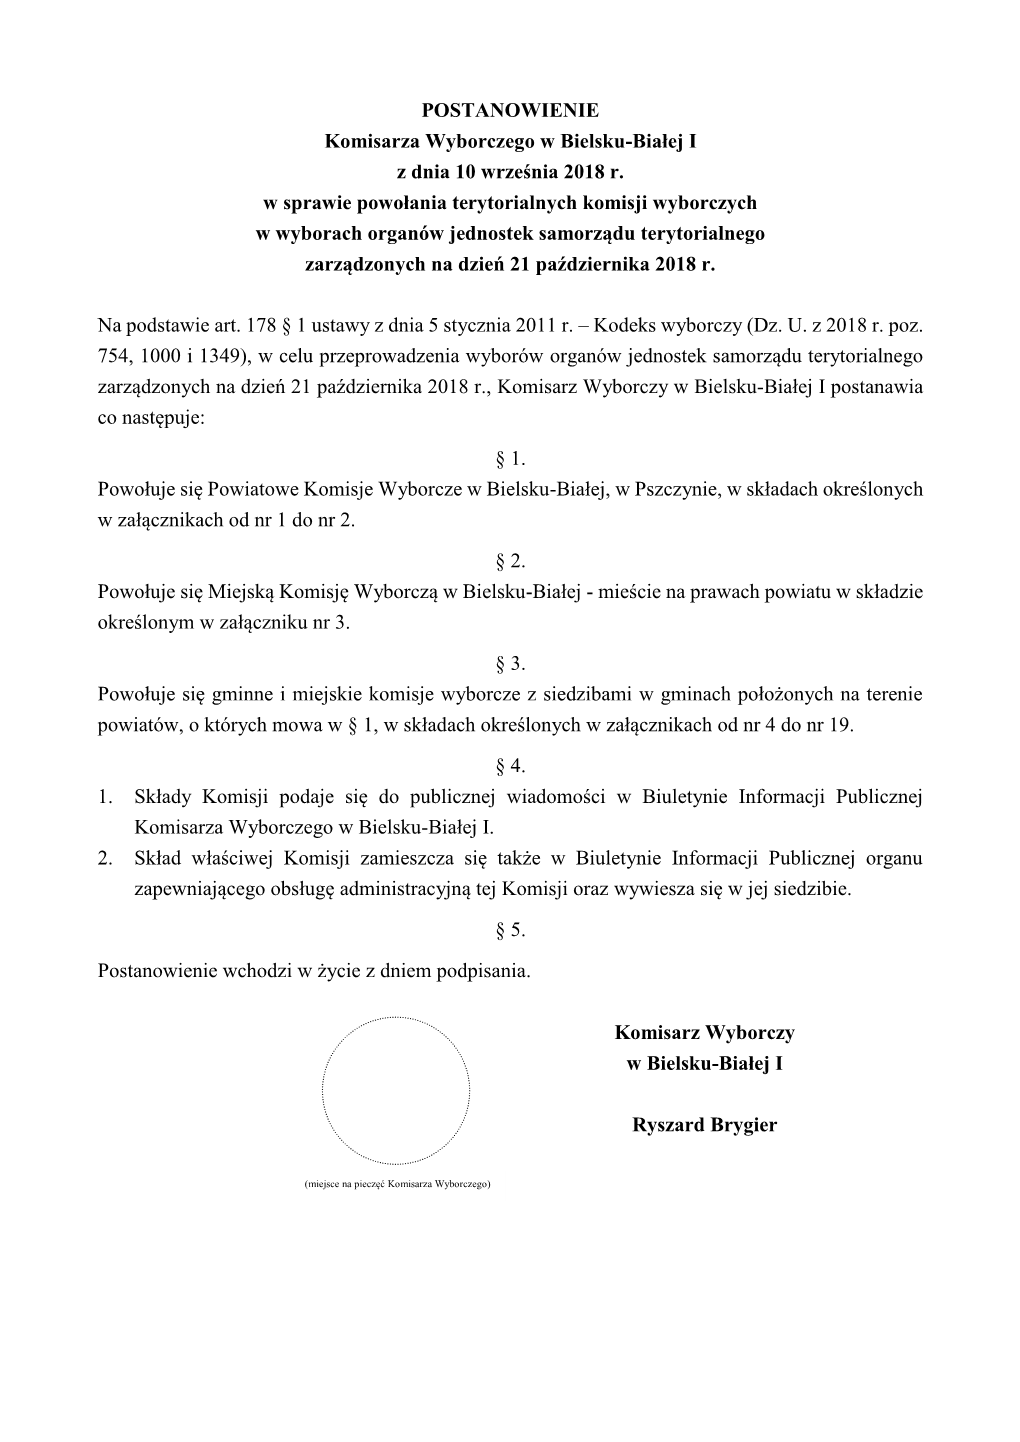 POSTANOWIENIE Komisarza Wyborczego W Bielsku-Białej I Z Dnia 10 Września 2018 R